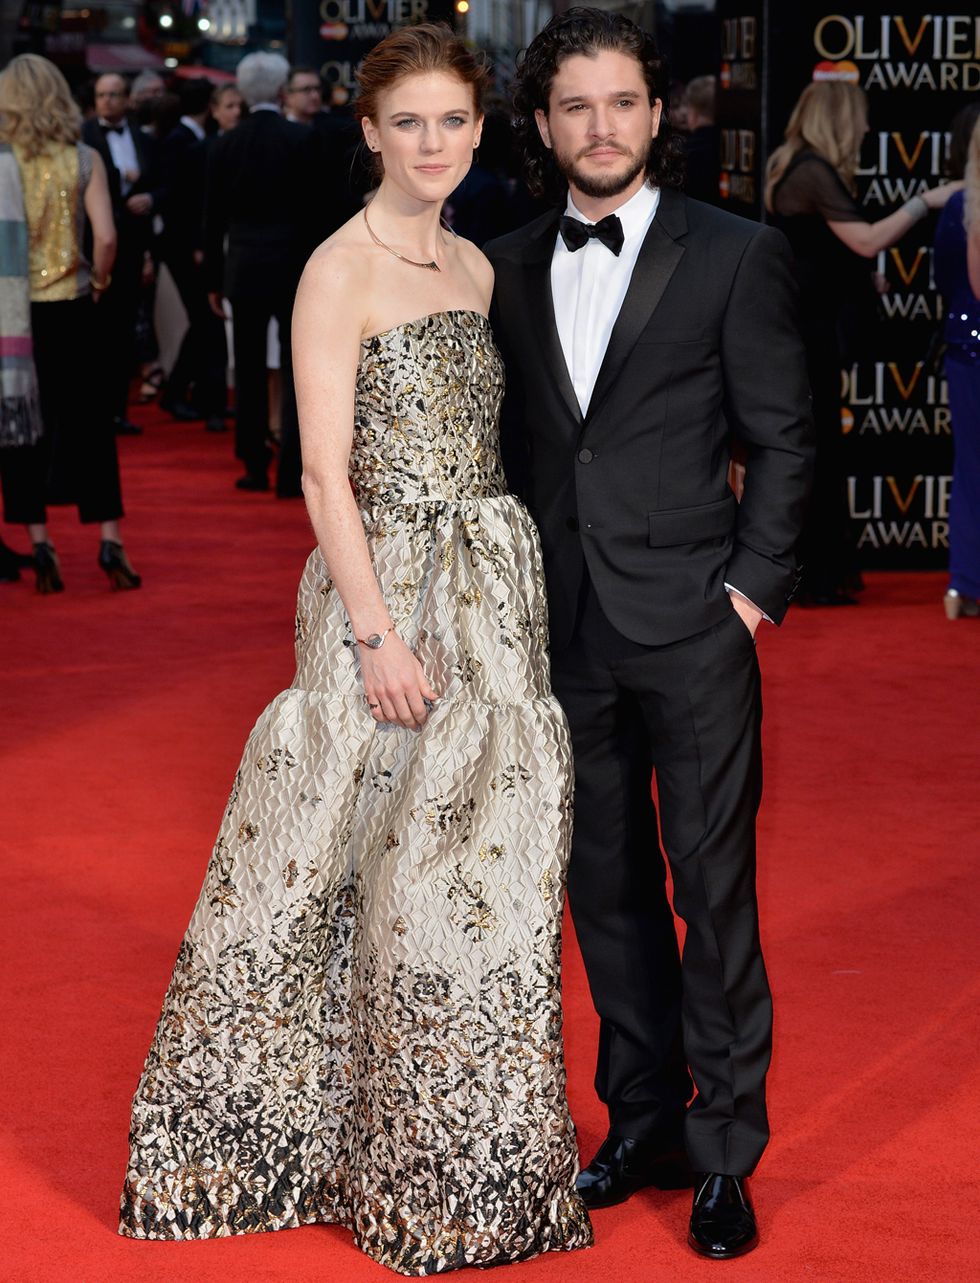 <p>Los rumores sobre su romance vienen del 2012, pero ahora Kit Harington y Rose Leslie (Jon Snow e Ygritte en la serie 'Juego de Tronos') ha confirmado su relación posando juntos en la alfombra roja de los Premios Olivier.</p>